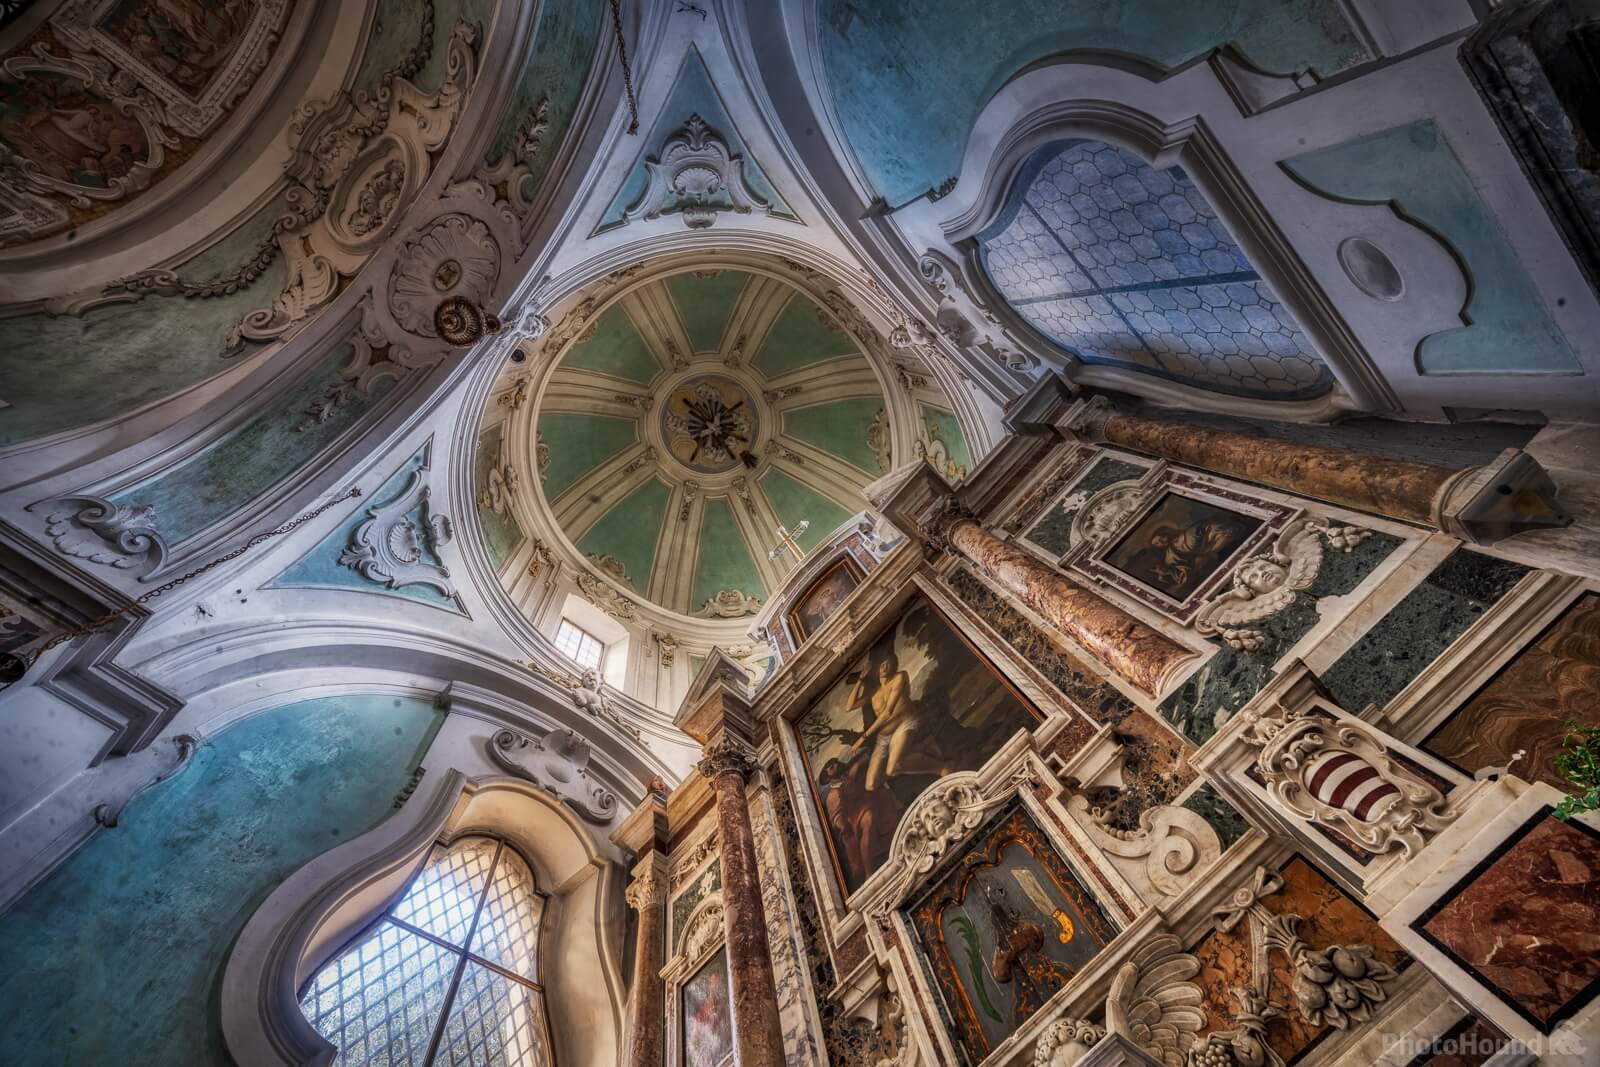 Image of Ravello - The Duomo (Cathedral) by Raimondo Giamberduca